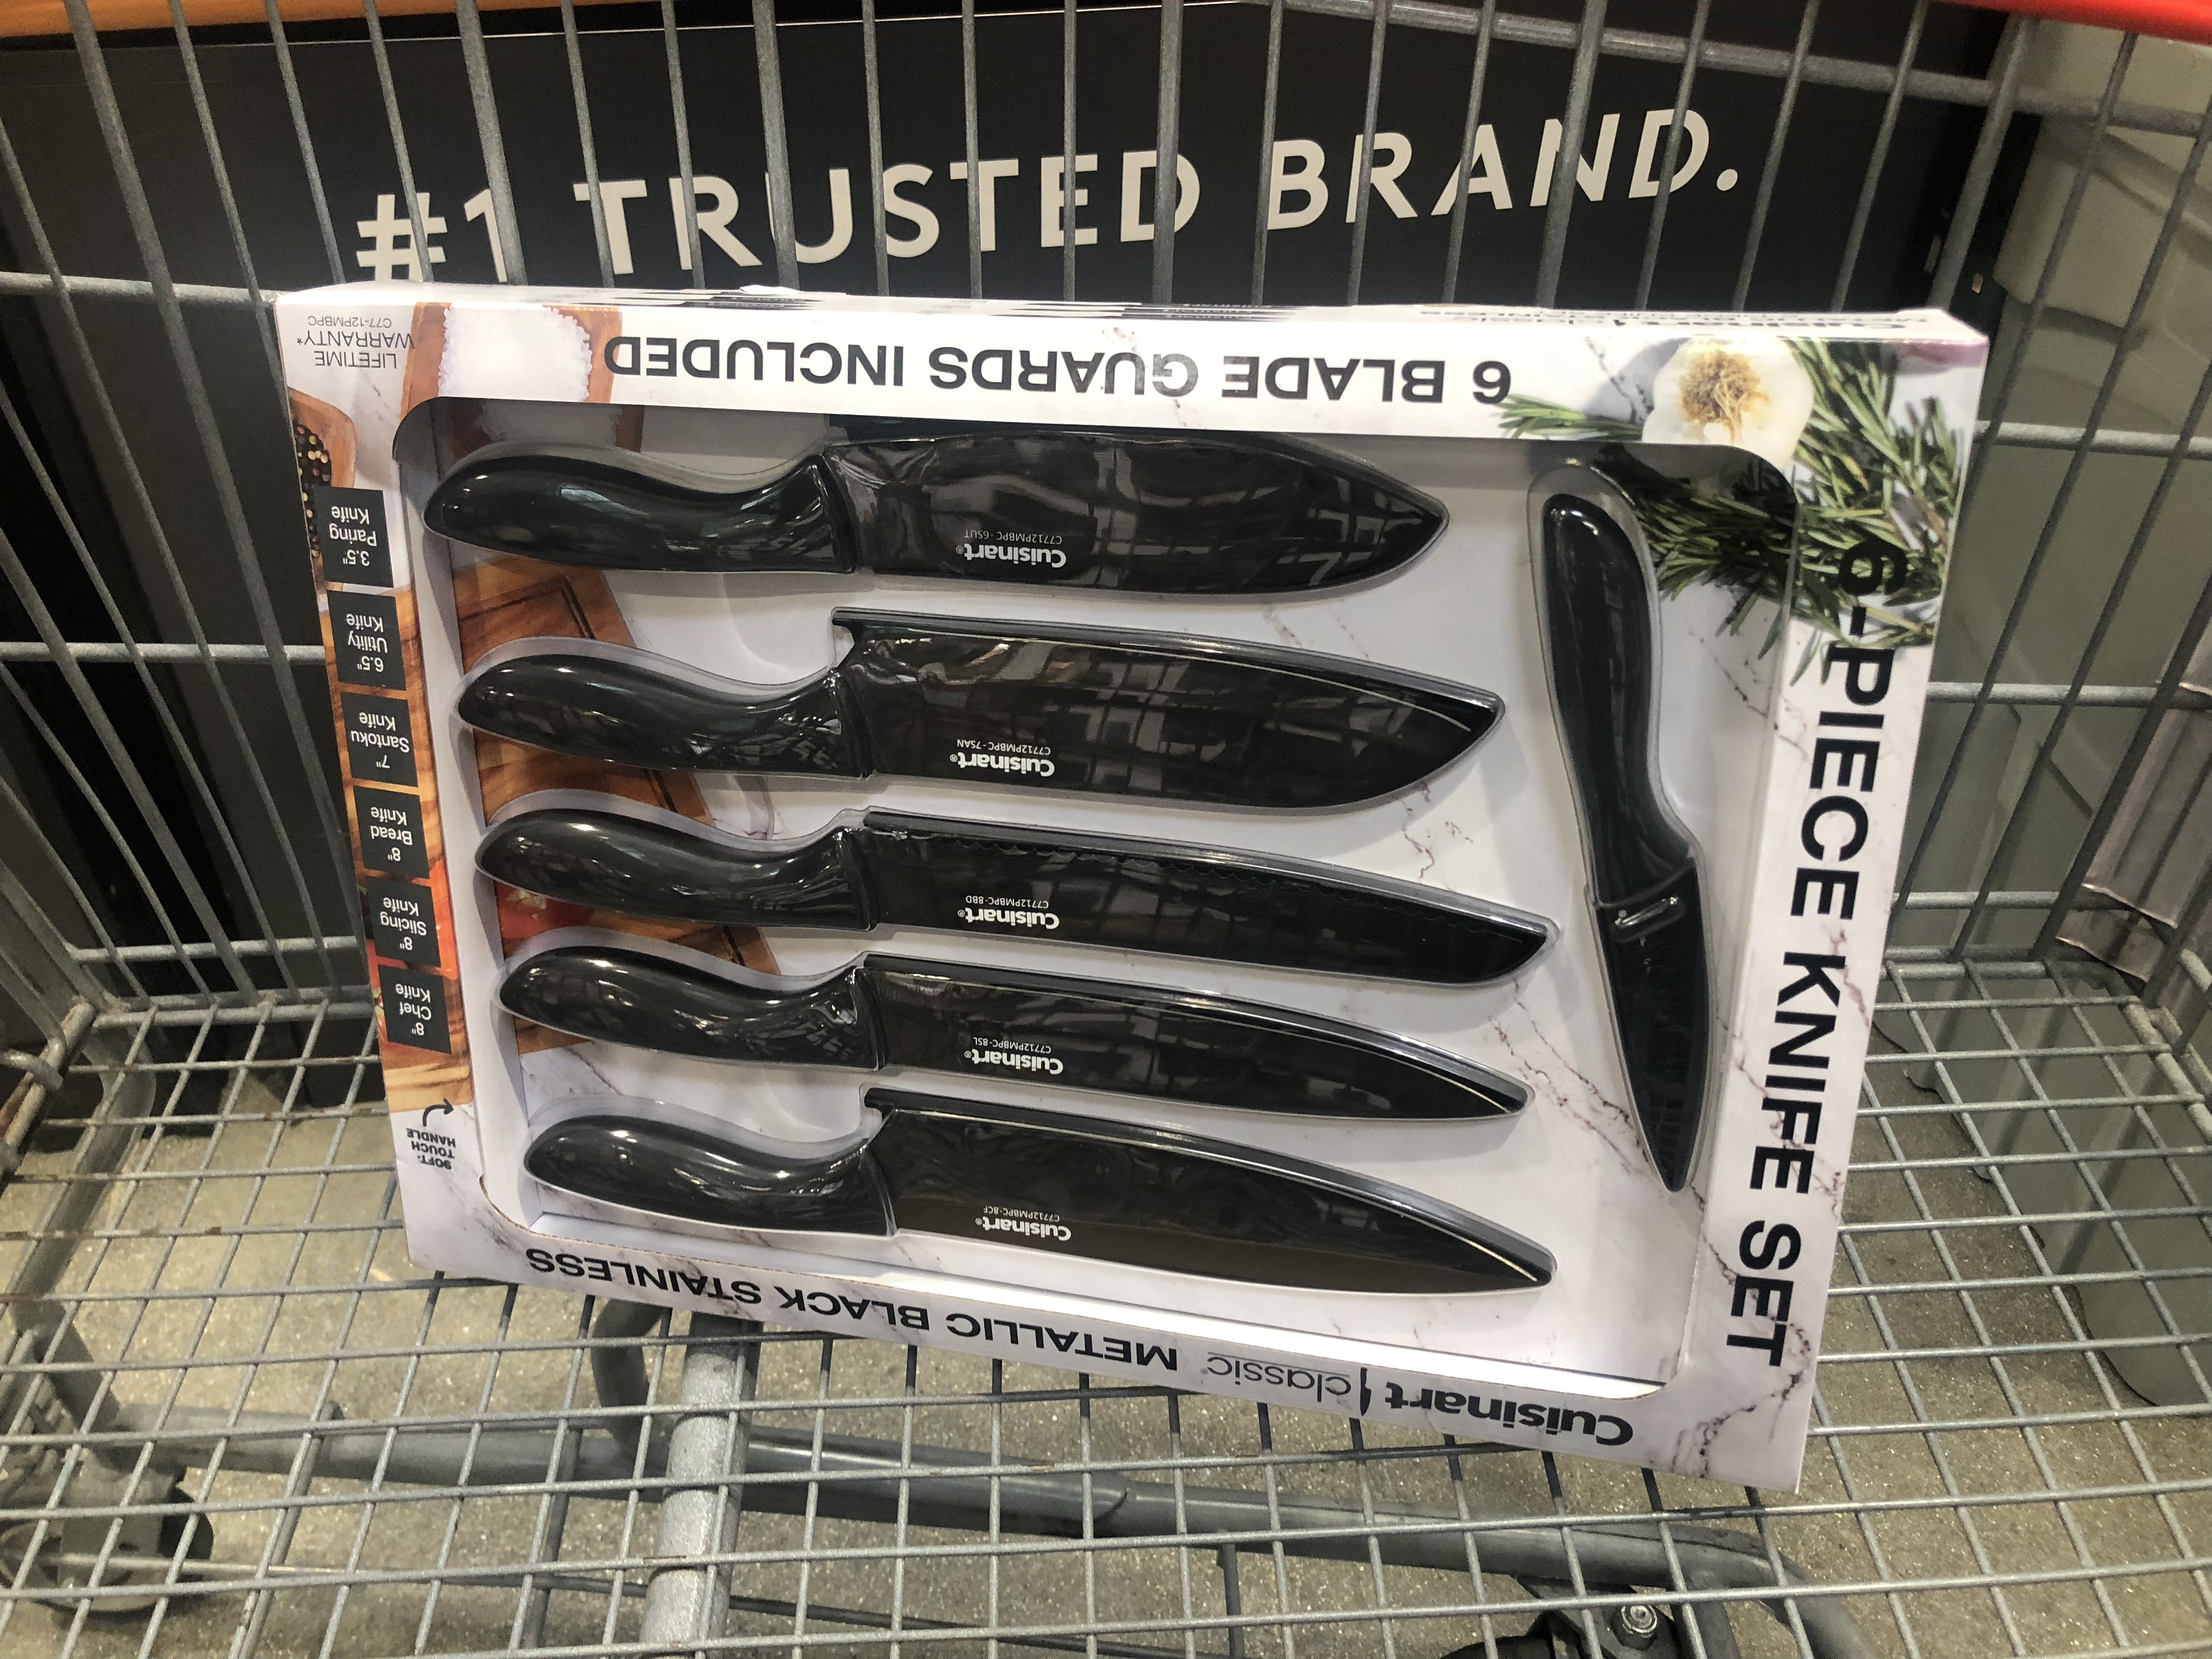 keto costco deals September 2018 – Cuisinart Knife Set at Costco